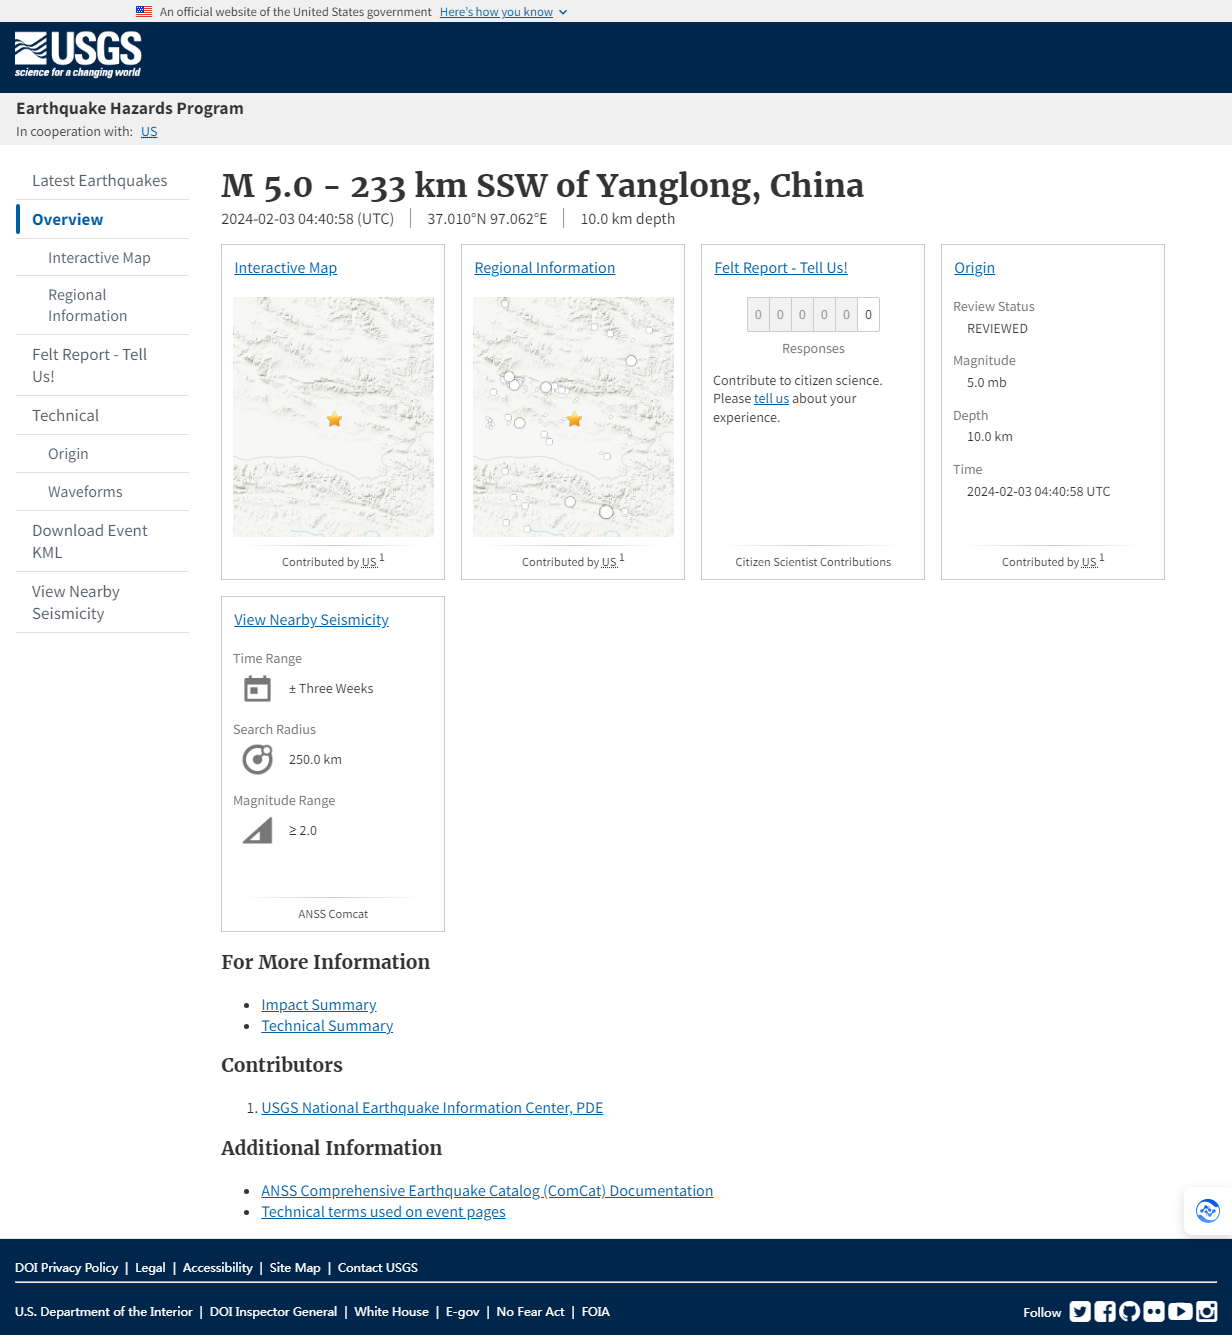 M 5.0 - 233 km SSW of Yanglong, China.png